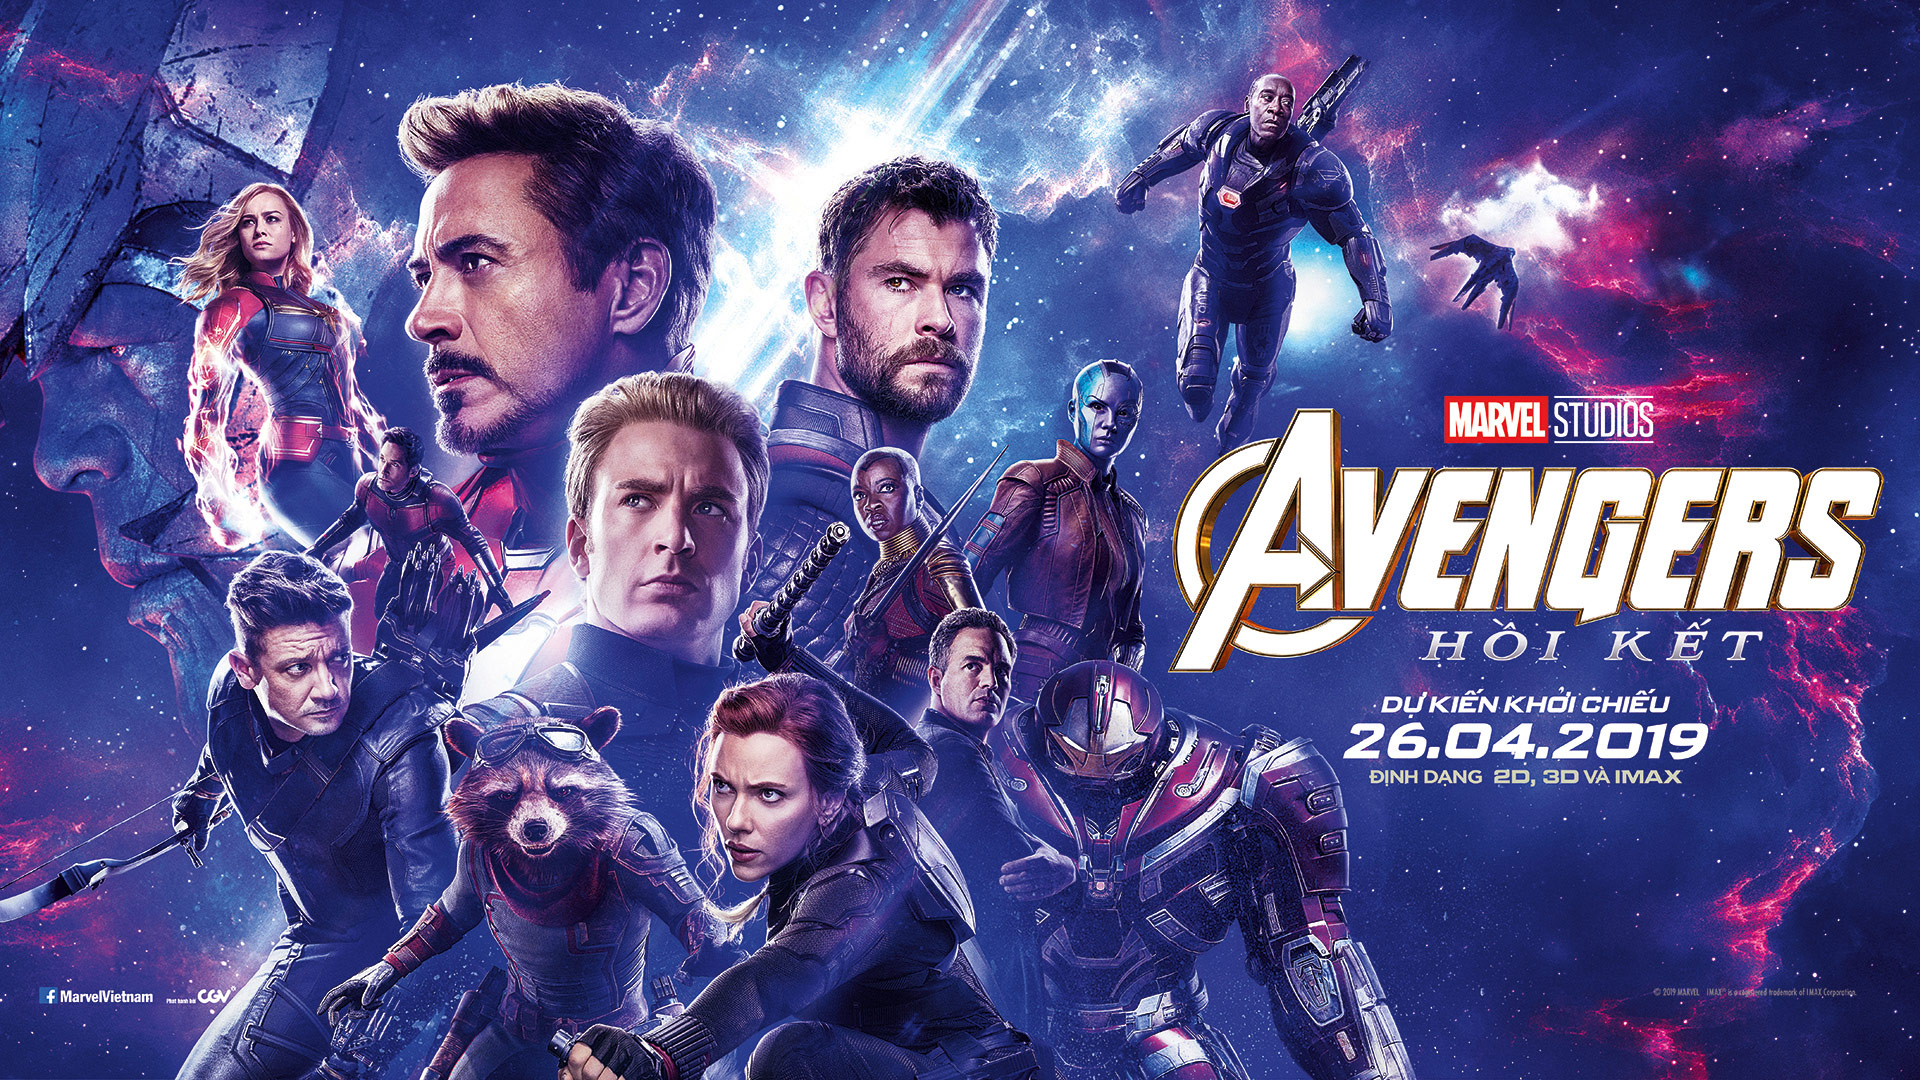 Avengers: Endgame lập kỷ lục vé bán sớm tại Việt Nam